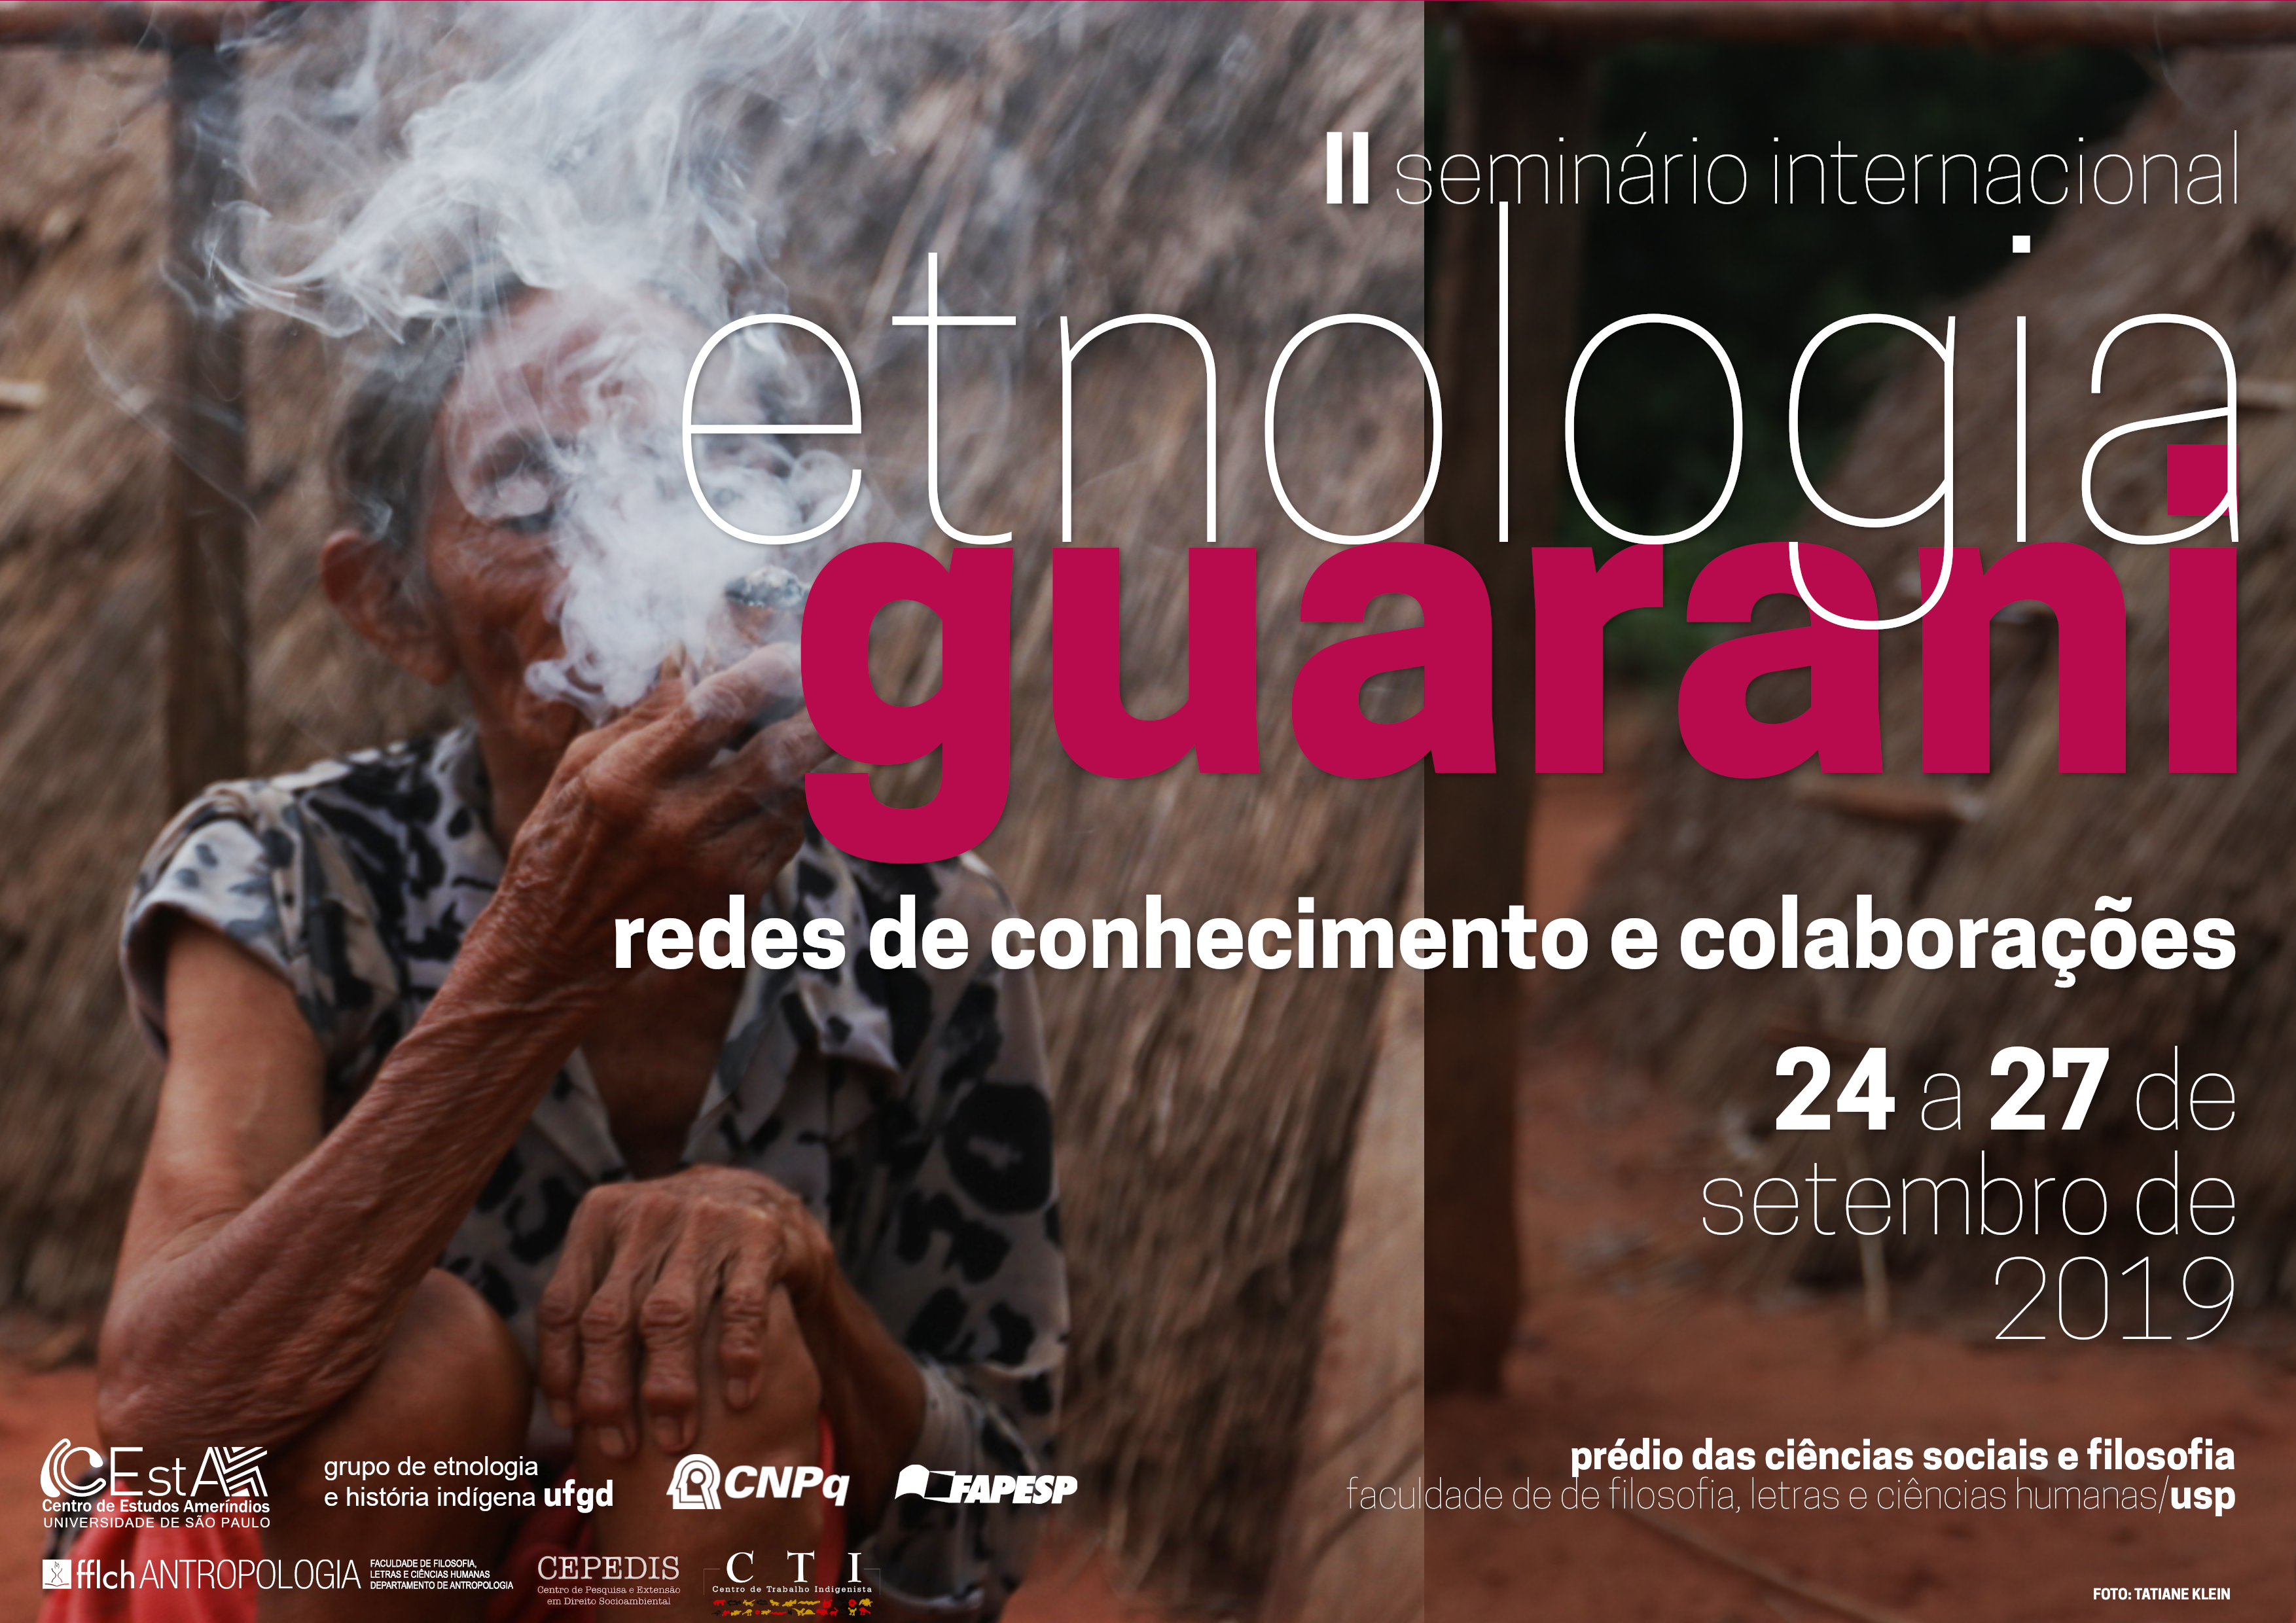 II Seminário Internacional Etnologia Guarani - 24 a 27/09/19